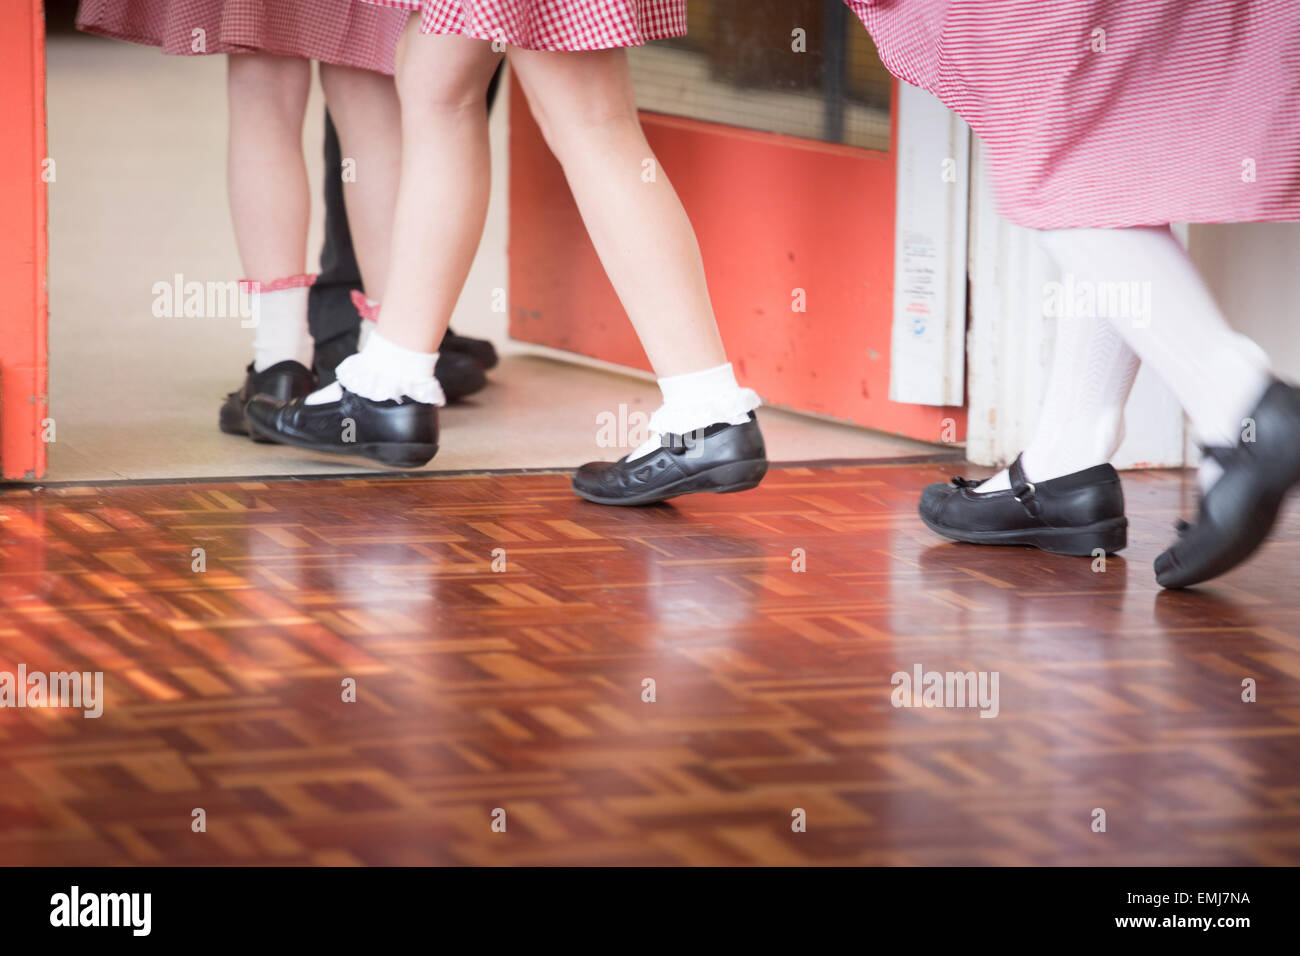 Un groupe d'écoliers britanniques quittent la salle d'école après - uniquement les jambes et pieds montrant. Banque D'Images